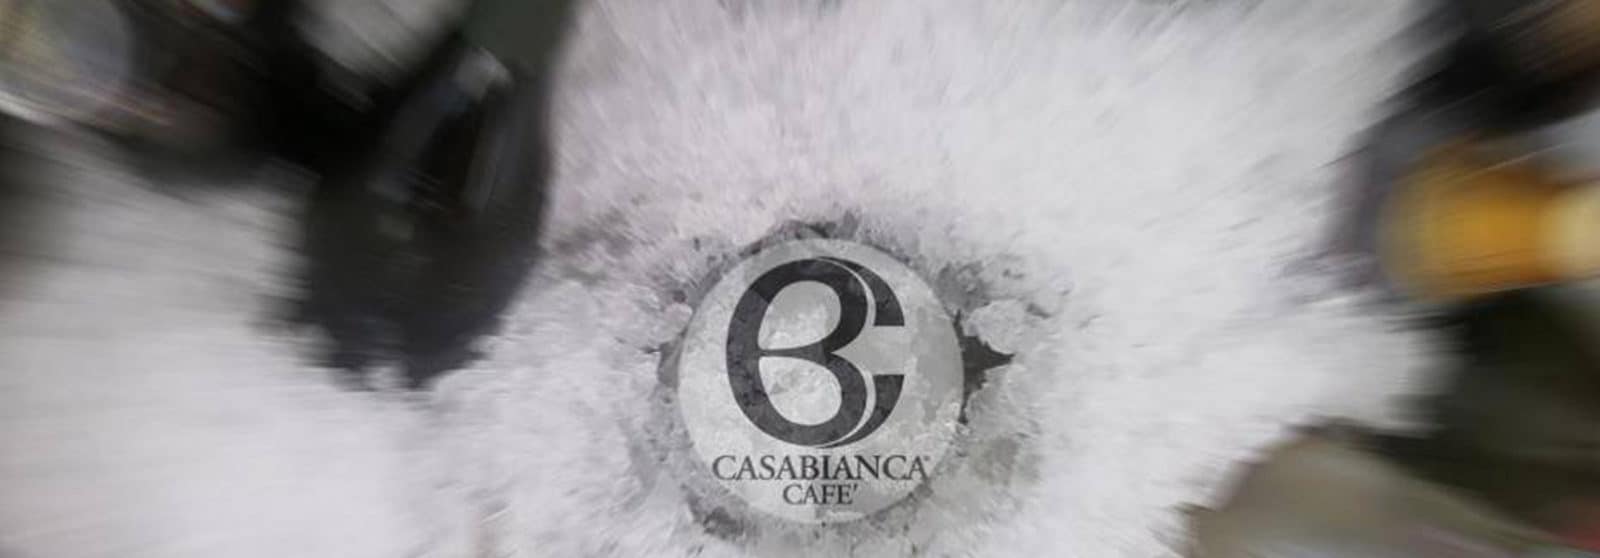 CASABIANCA Cafè